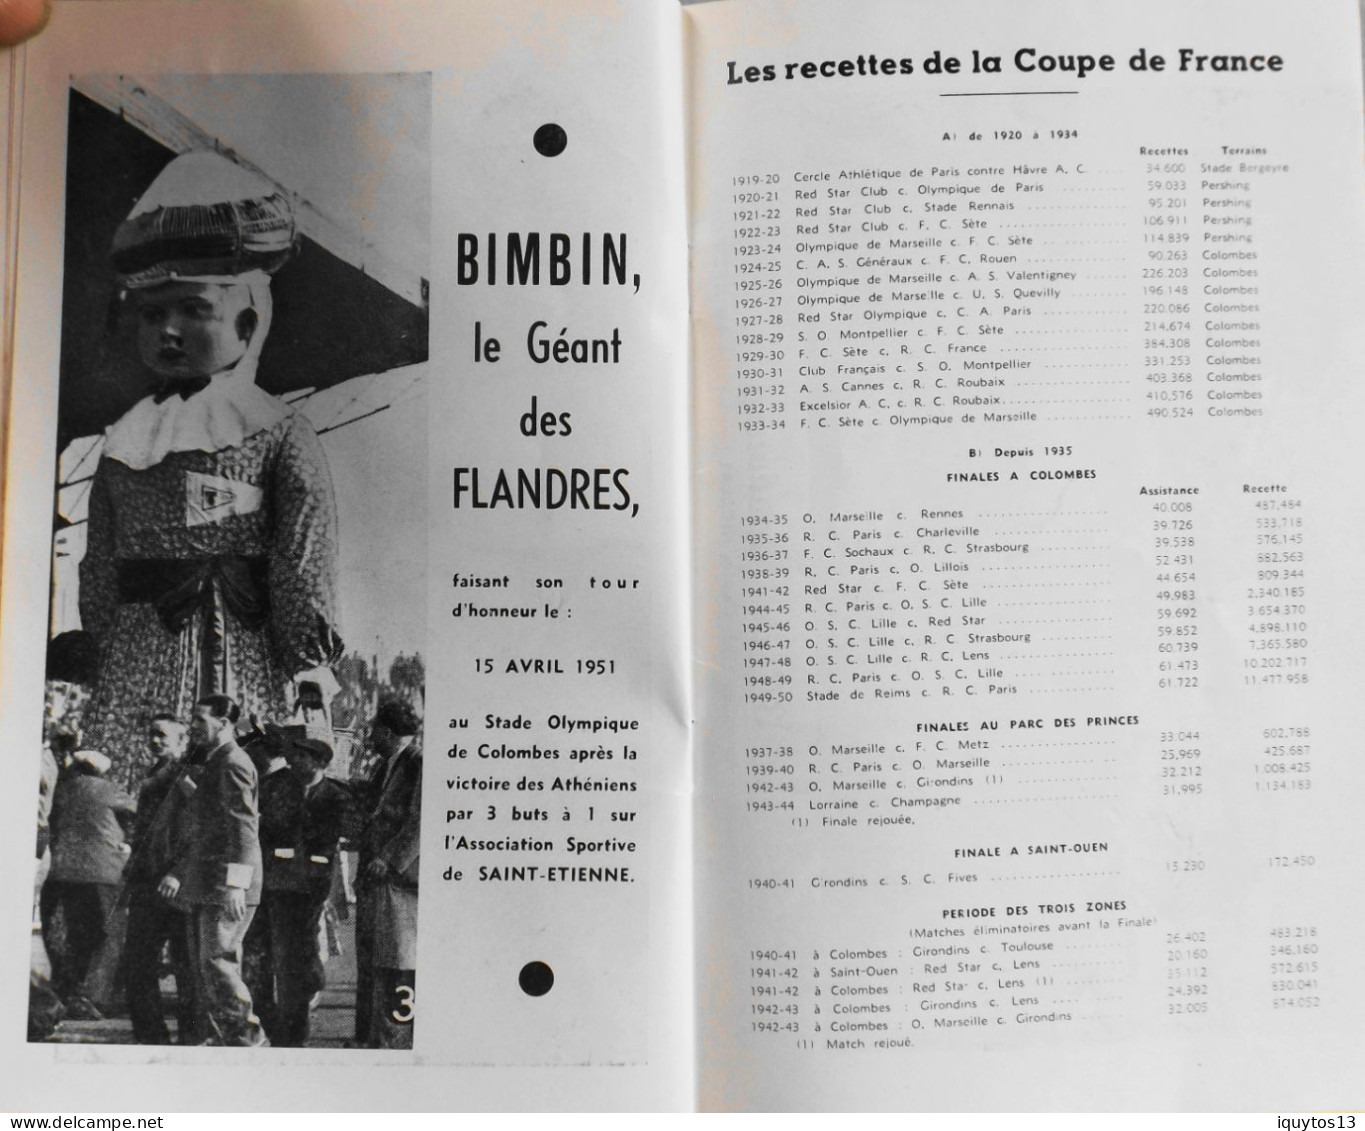 RARE Programme de FINALE de la COUPE de FRANCE au Stade Colombes le 6 Mai 1951 R.C. STRASBOURG / U.S. VALENCIENNES-ANZIN